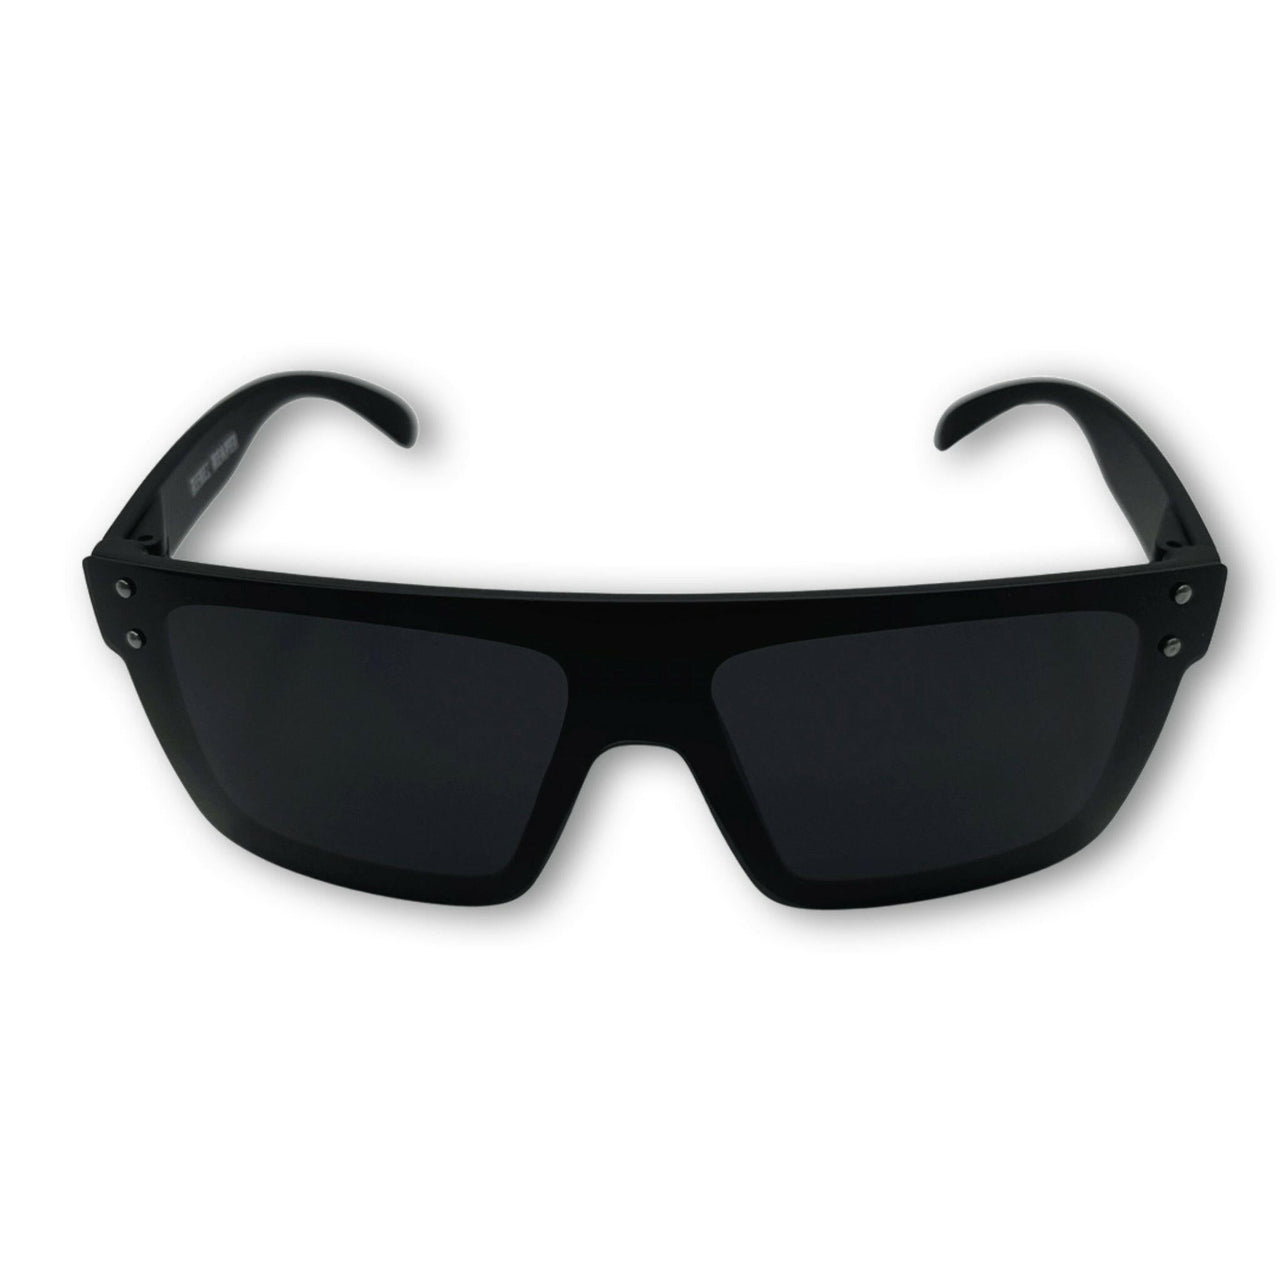 Flair Black Polarized Lens Sunglasses